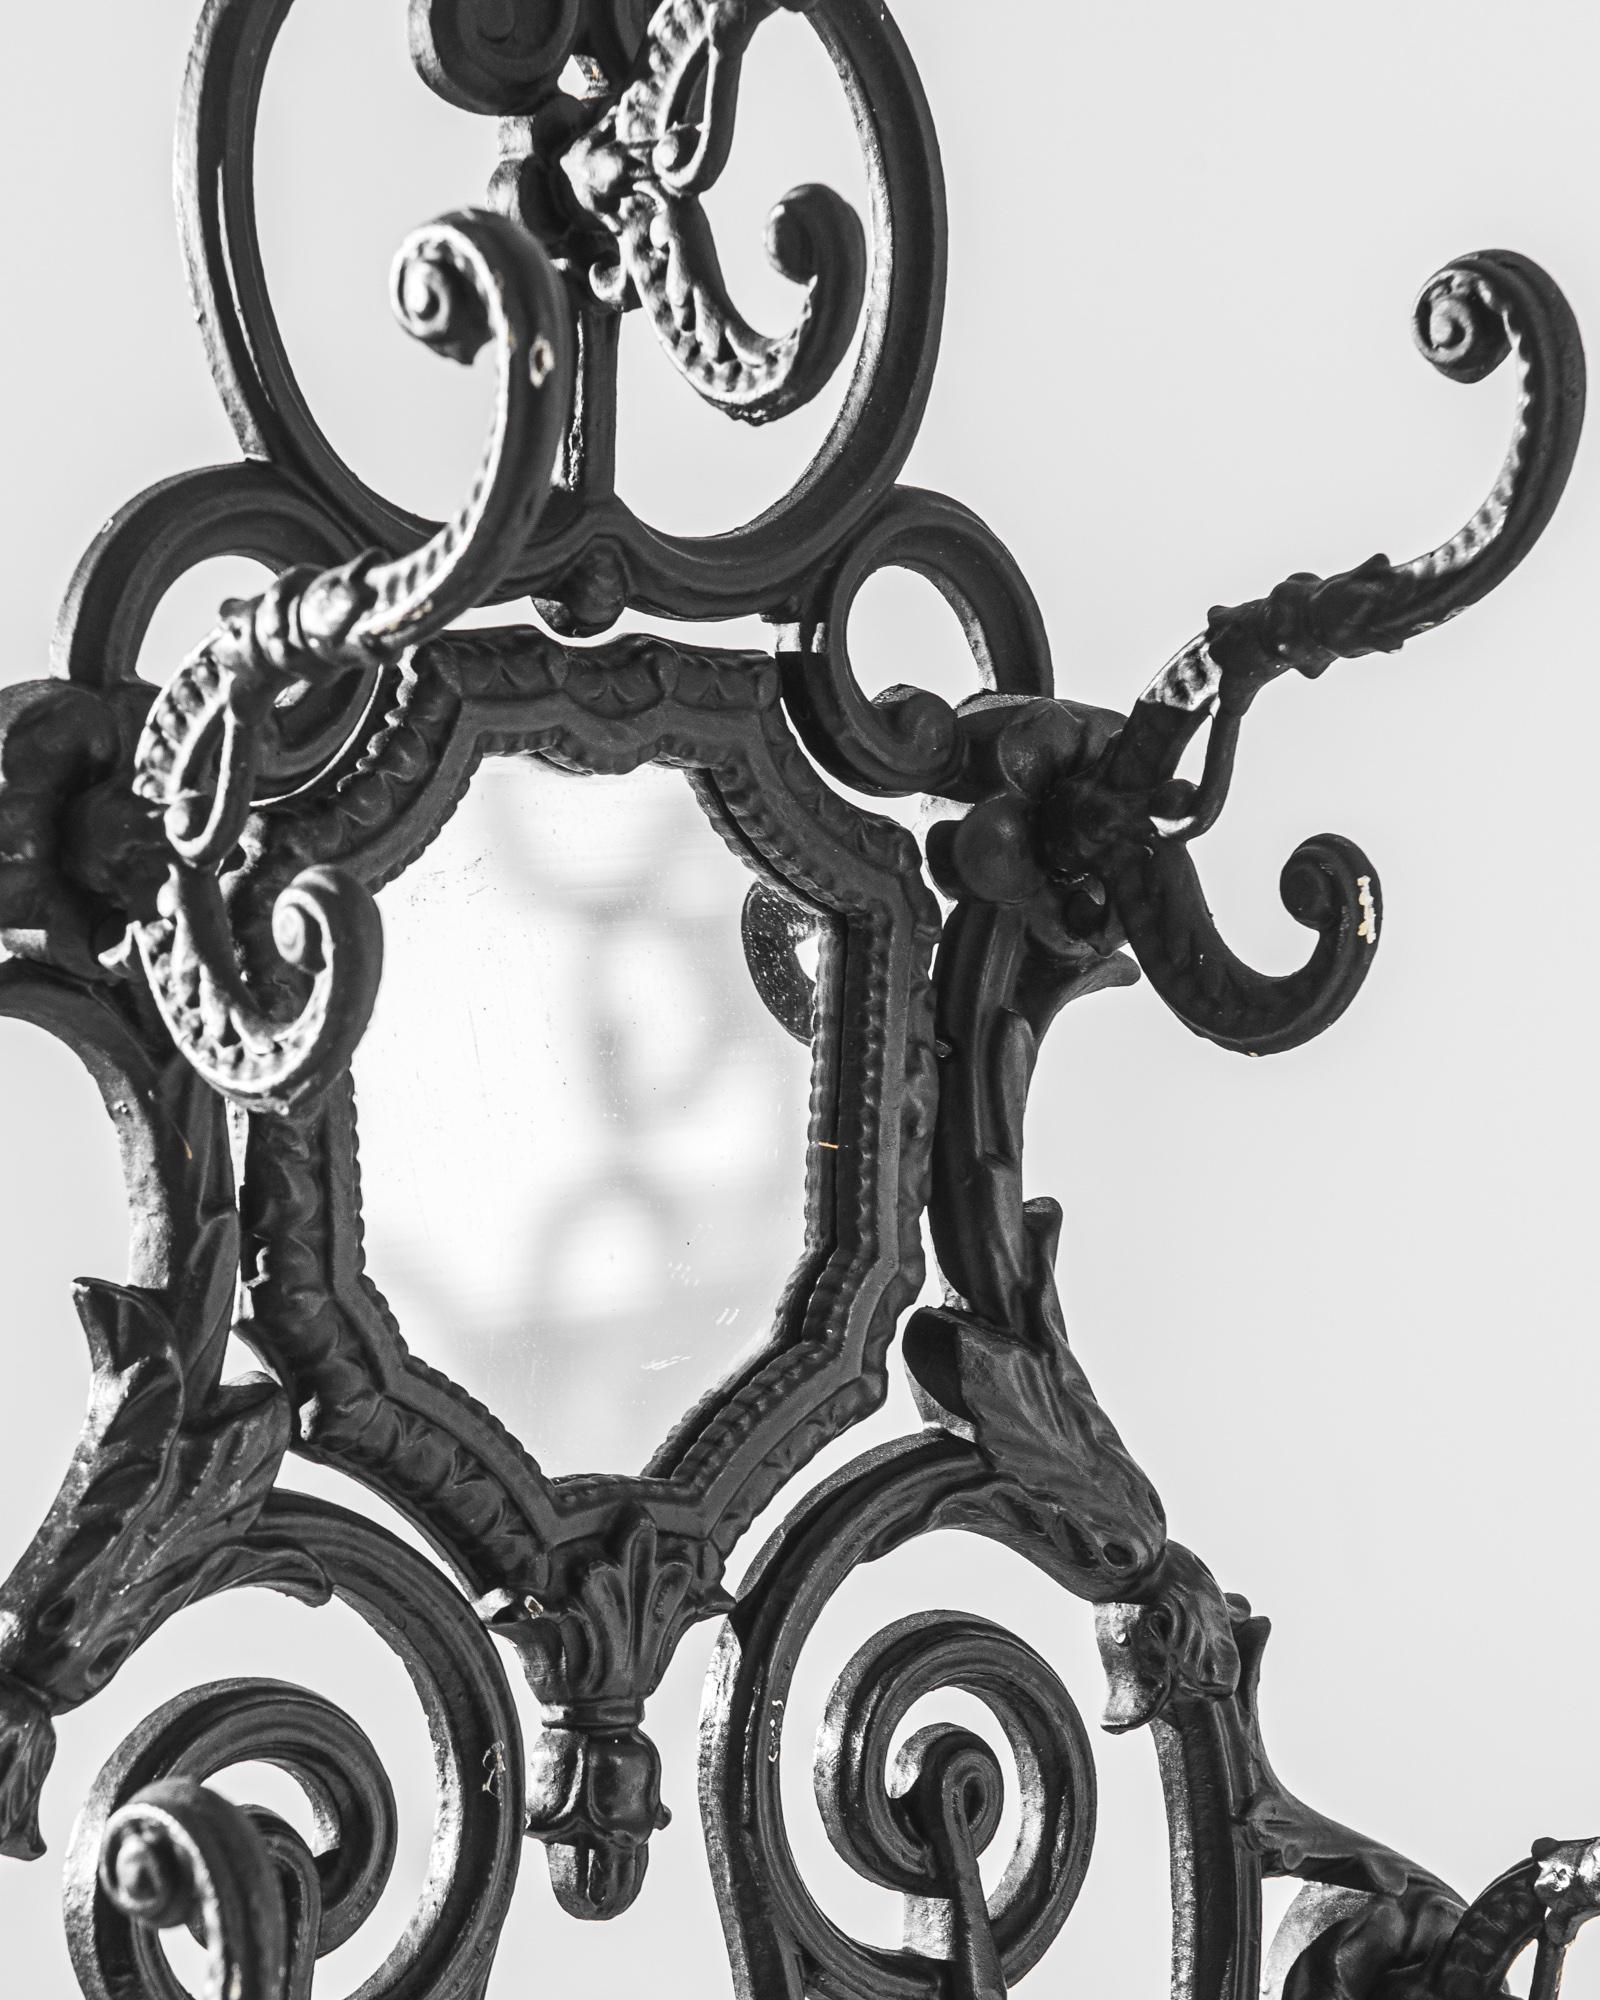 Dieses exquisite französische Eisengestell aus der Zeit um 1900 ist ein Meisterwerk der Schmiedekunst, das mit seinen filigranen Schnörkeln und ornamentalen Details an die Eleganz der Belle Époque erinnert. Die dramatischen Konturen und Schnörkel